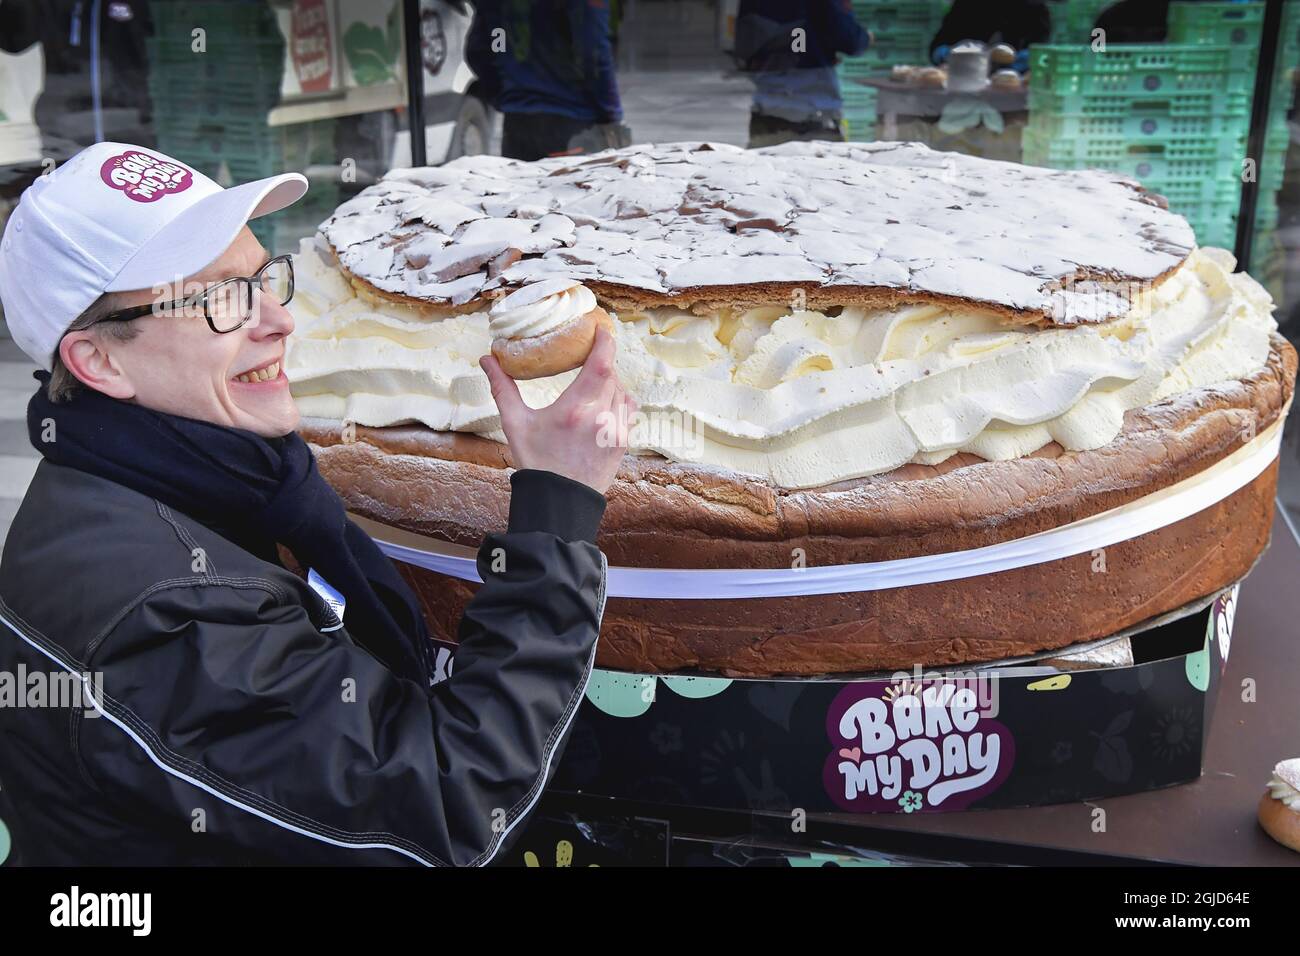 Die schwedische Bäckerei Bake My Day hat einen Guinness-Weltrekord aufgestellt, indem sie das größte Semla der Welt, ein schwedisches Rahmbrötchen, gebacken hat. Die Bäckerei verwendete 115 Liter Rahm, 30 kg Marzipan und 20 kg Puderzucker. Es wiegt 300 kg und hat 18 Stunden gebraucht, um es zu machen. Der Bäcker Daniel Granholm hält einen normal großen Semla in der Hand. Foto: Jonas Ekstromer / TT kod 10030 Stockfoto